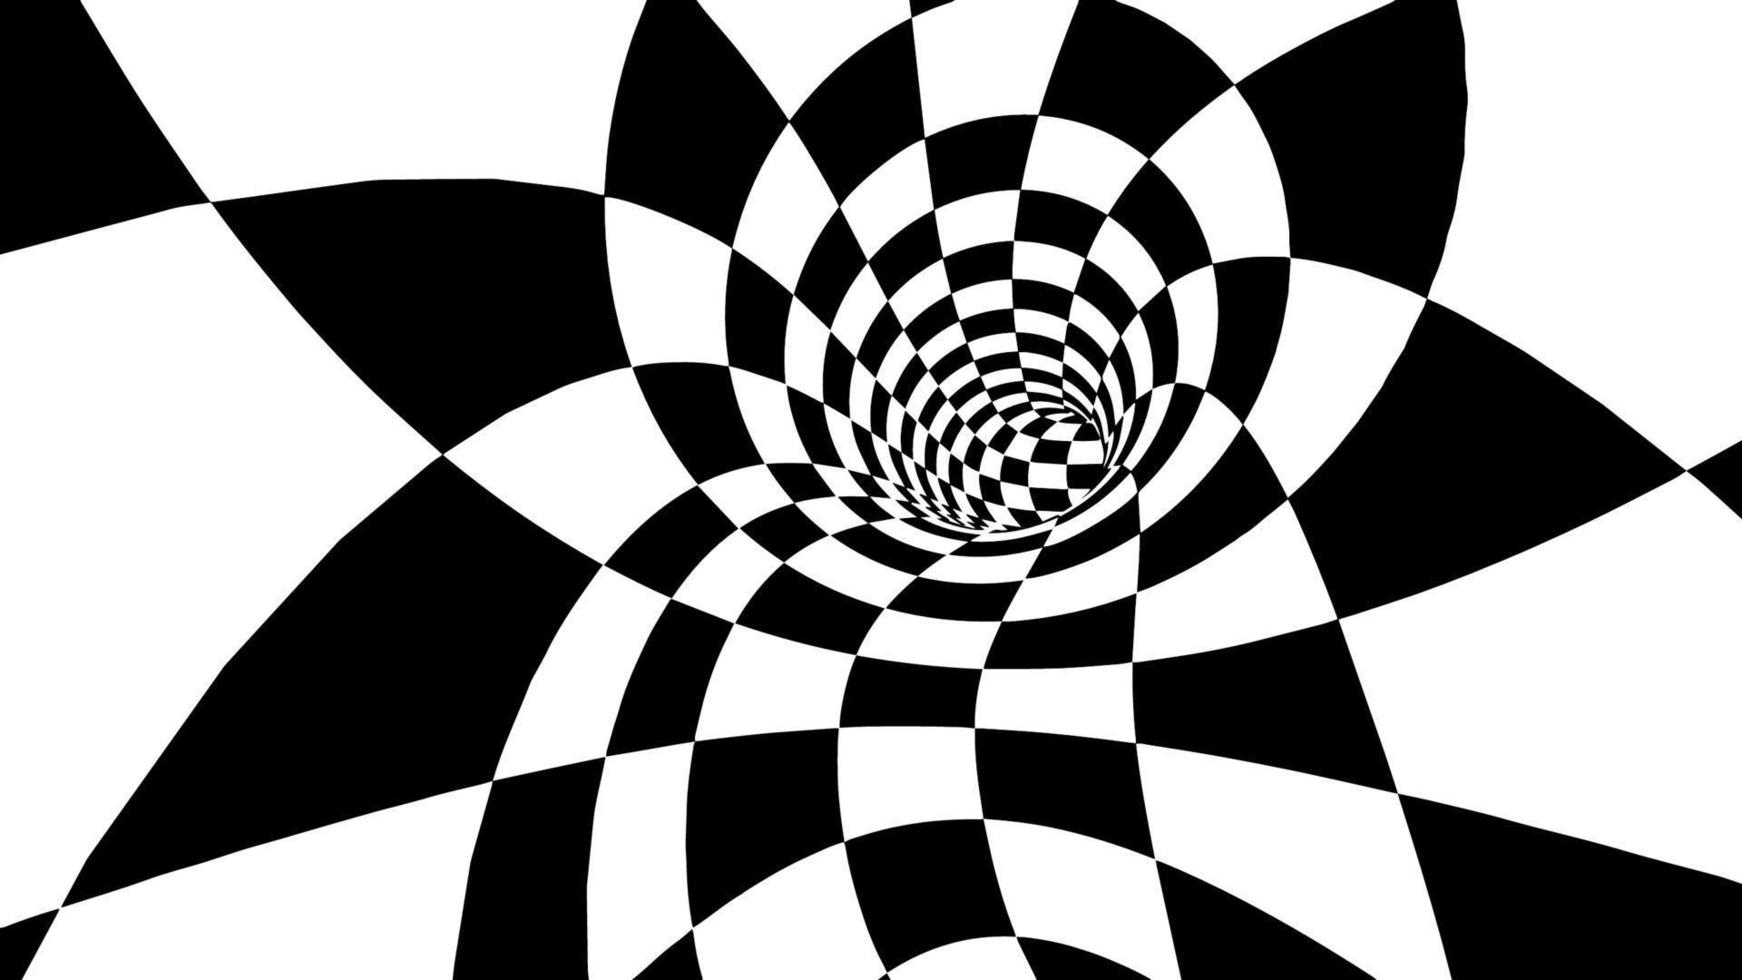 rutig torus vektor illustration eps 10. optisk illusion vektor. lopp mästerskap bakgrund.